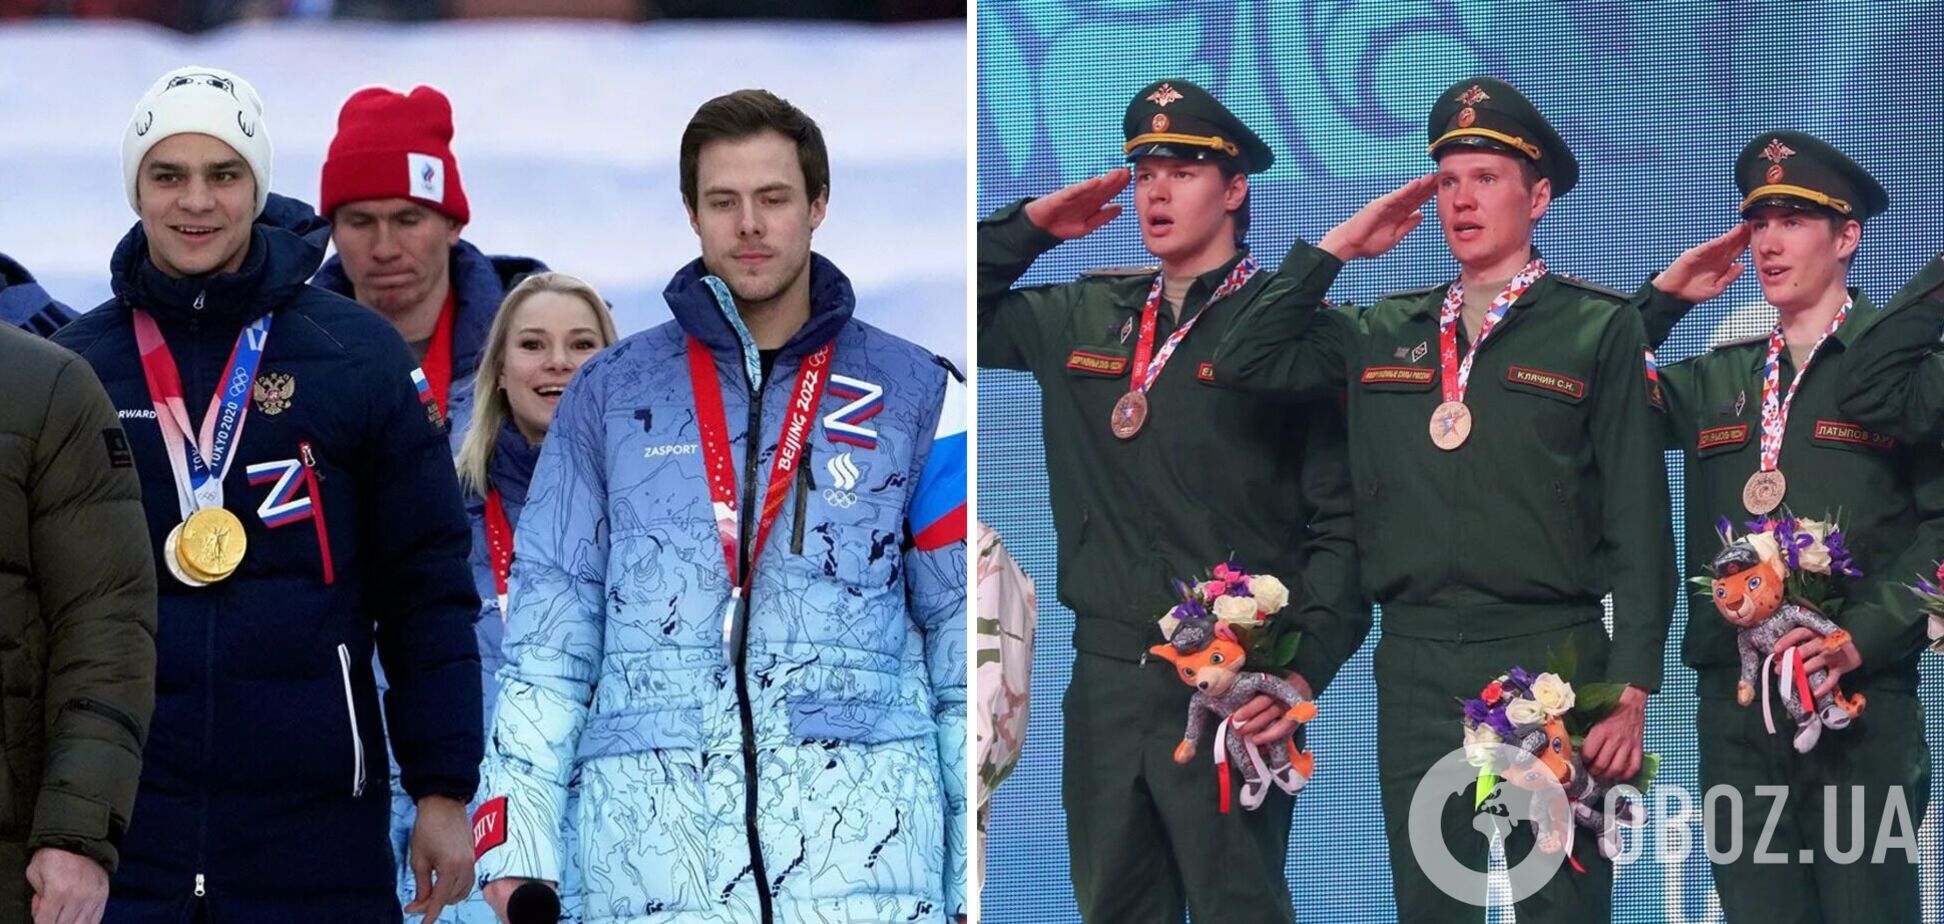 'Как в Лужниках zиговать, так первые': в России решили 'отмазать' спортсменов от мобилизации, вызвав гнев болельщиков